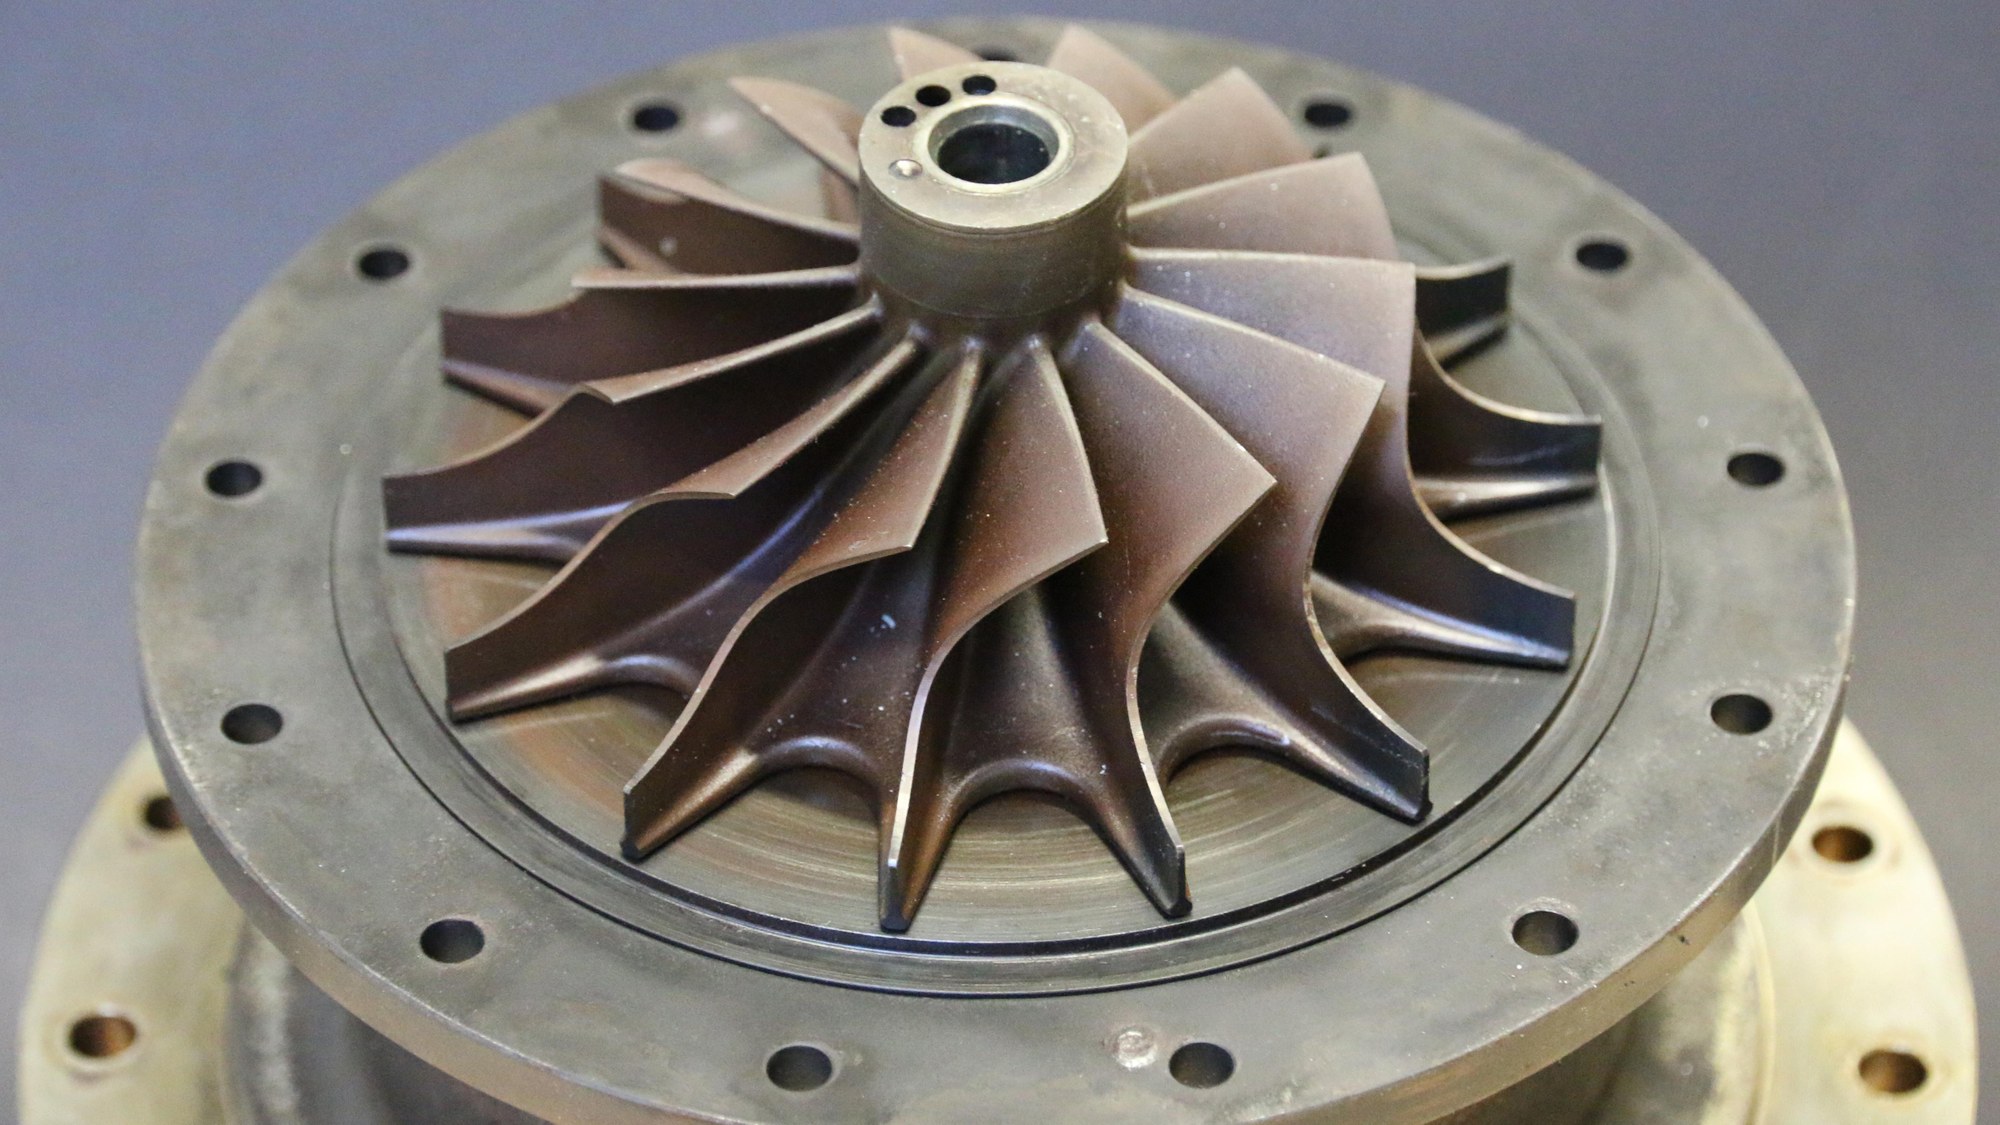 View into the interior of a micro gas turbine